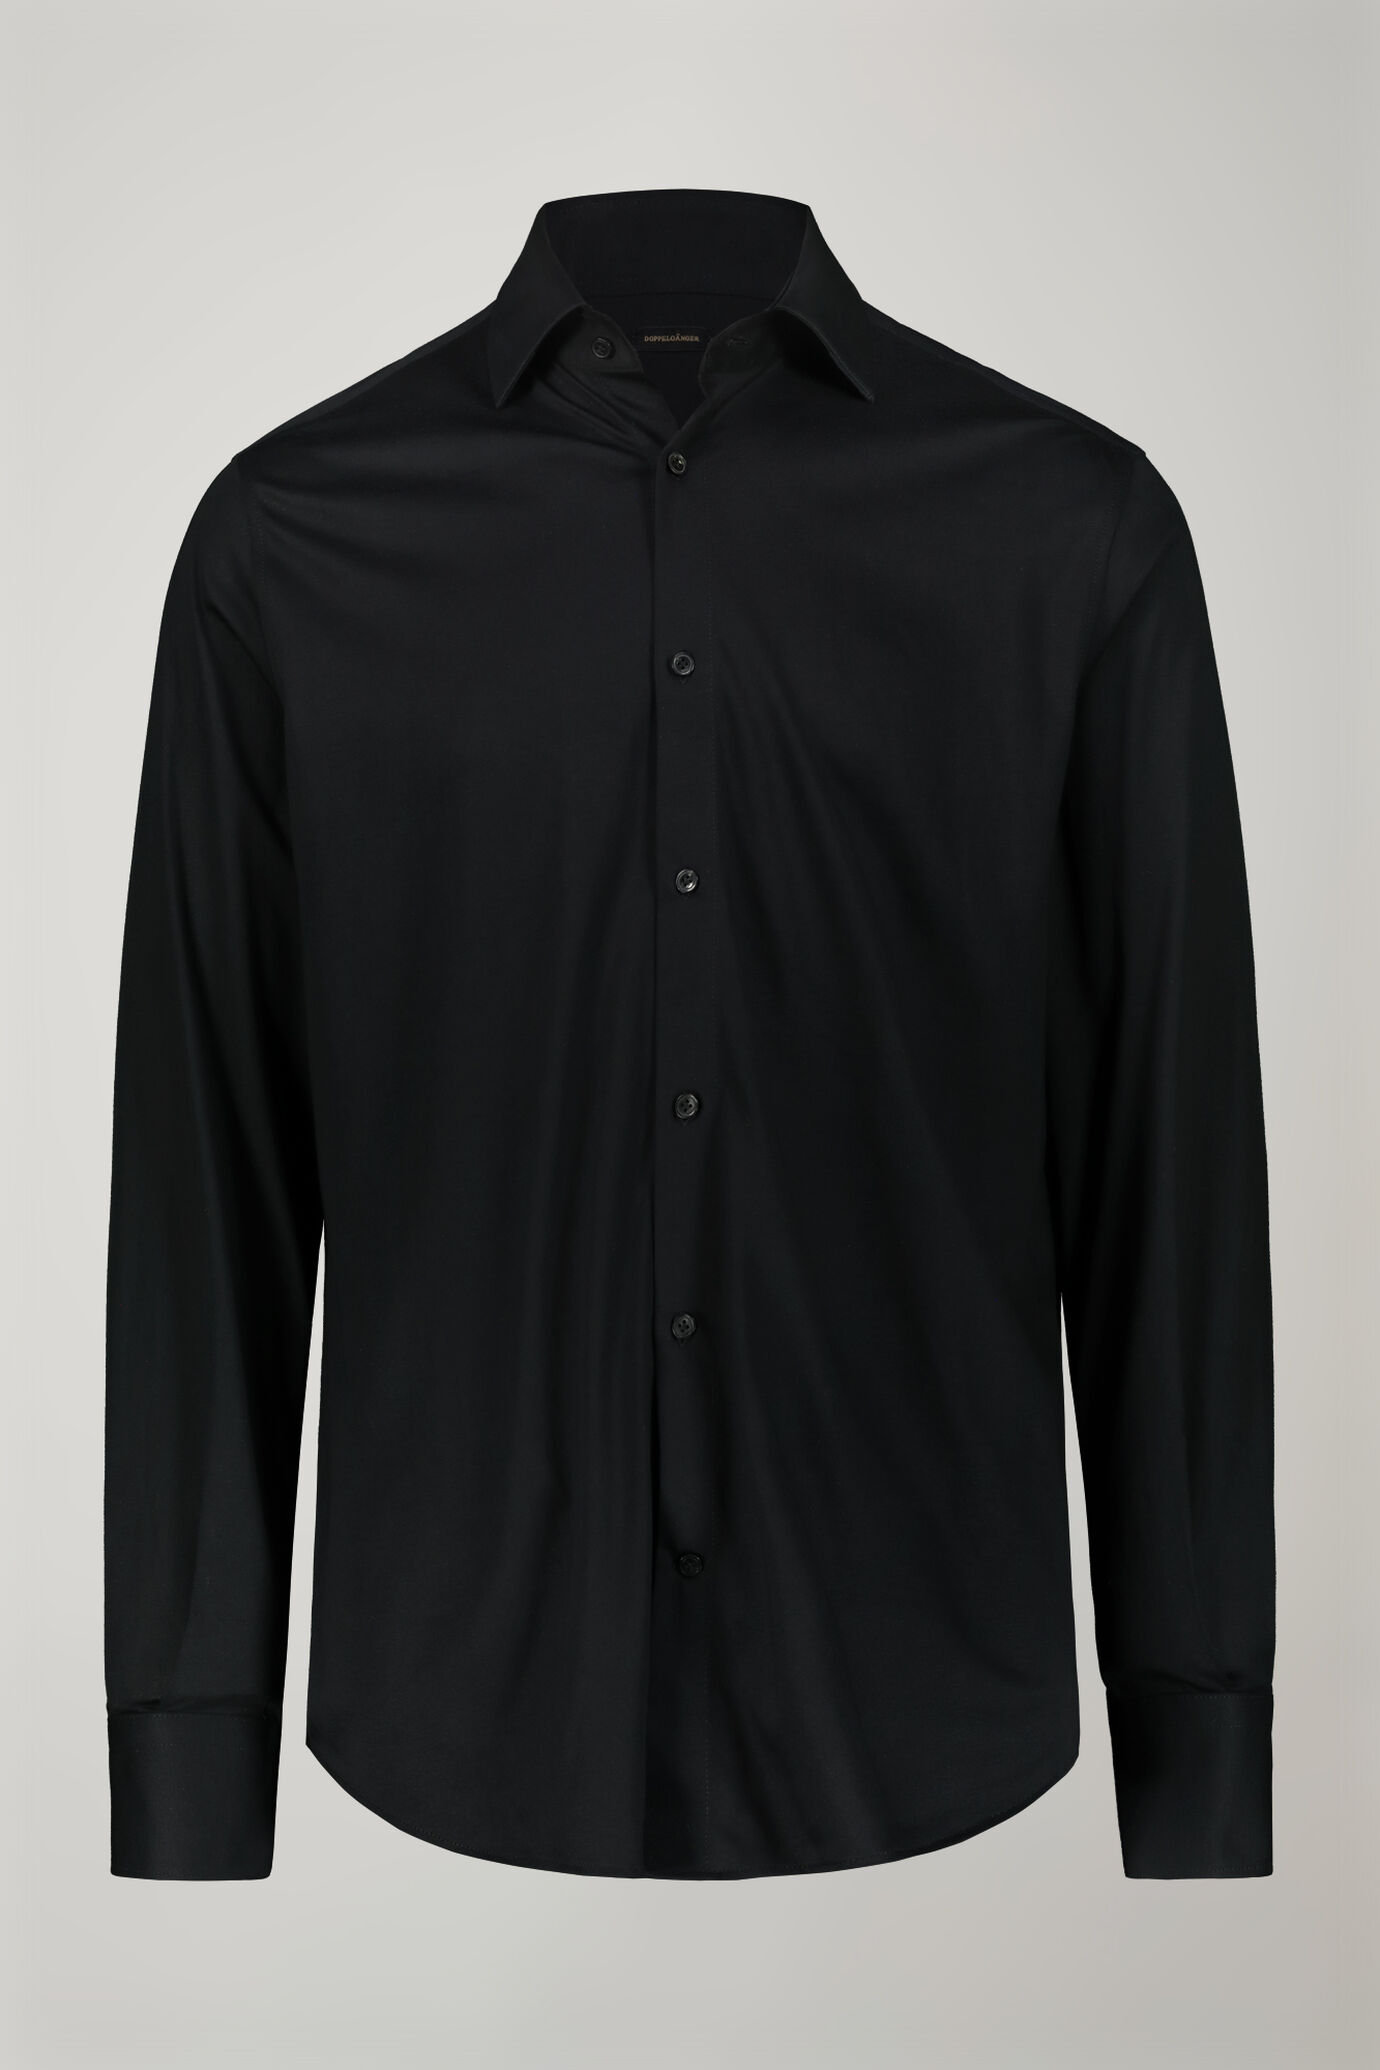 Polo camicia uomo a manica lunga con collo classico 100% cotone piquet regular fit image number 5